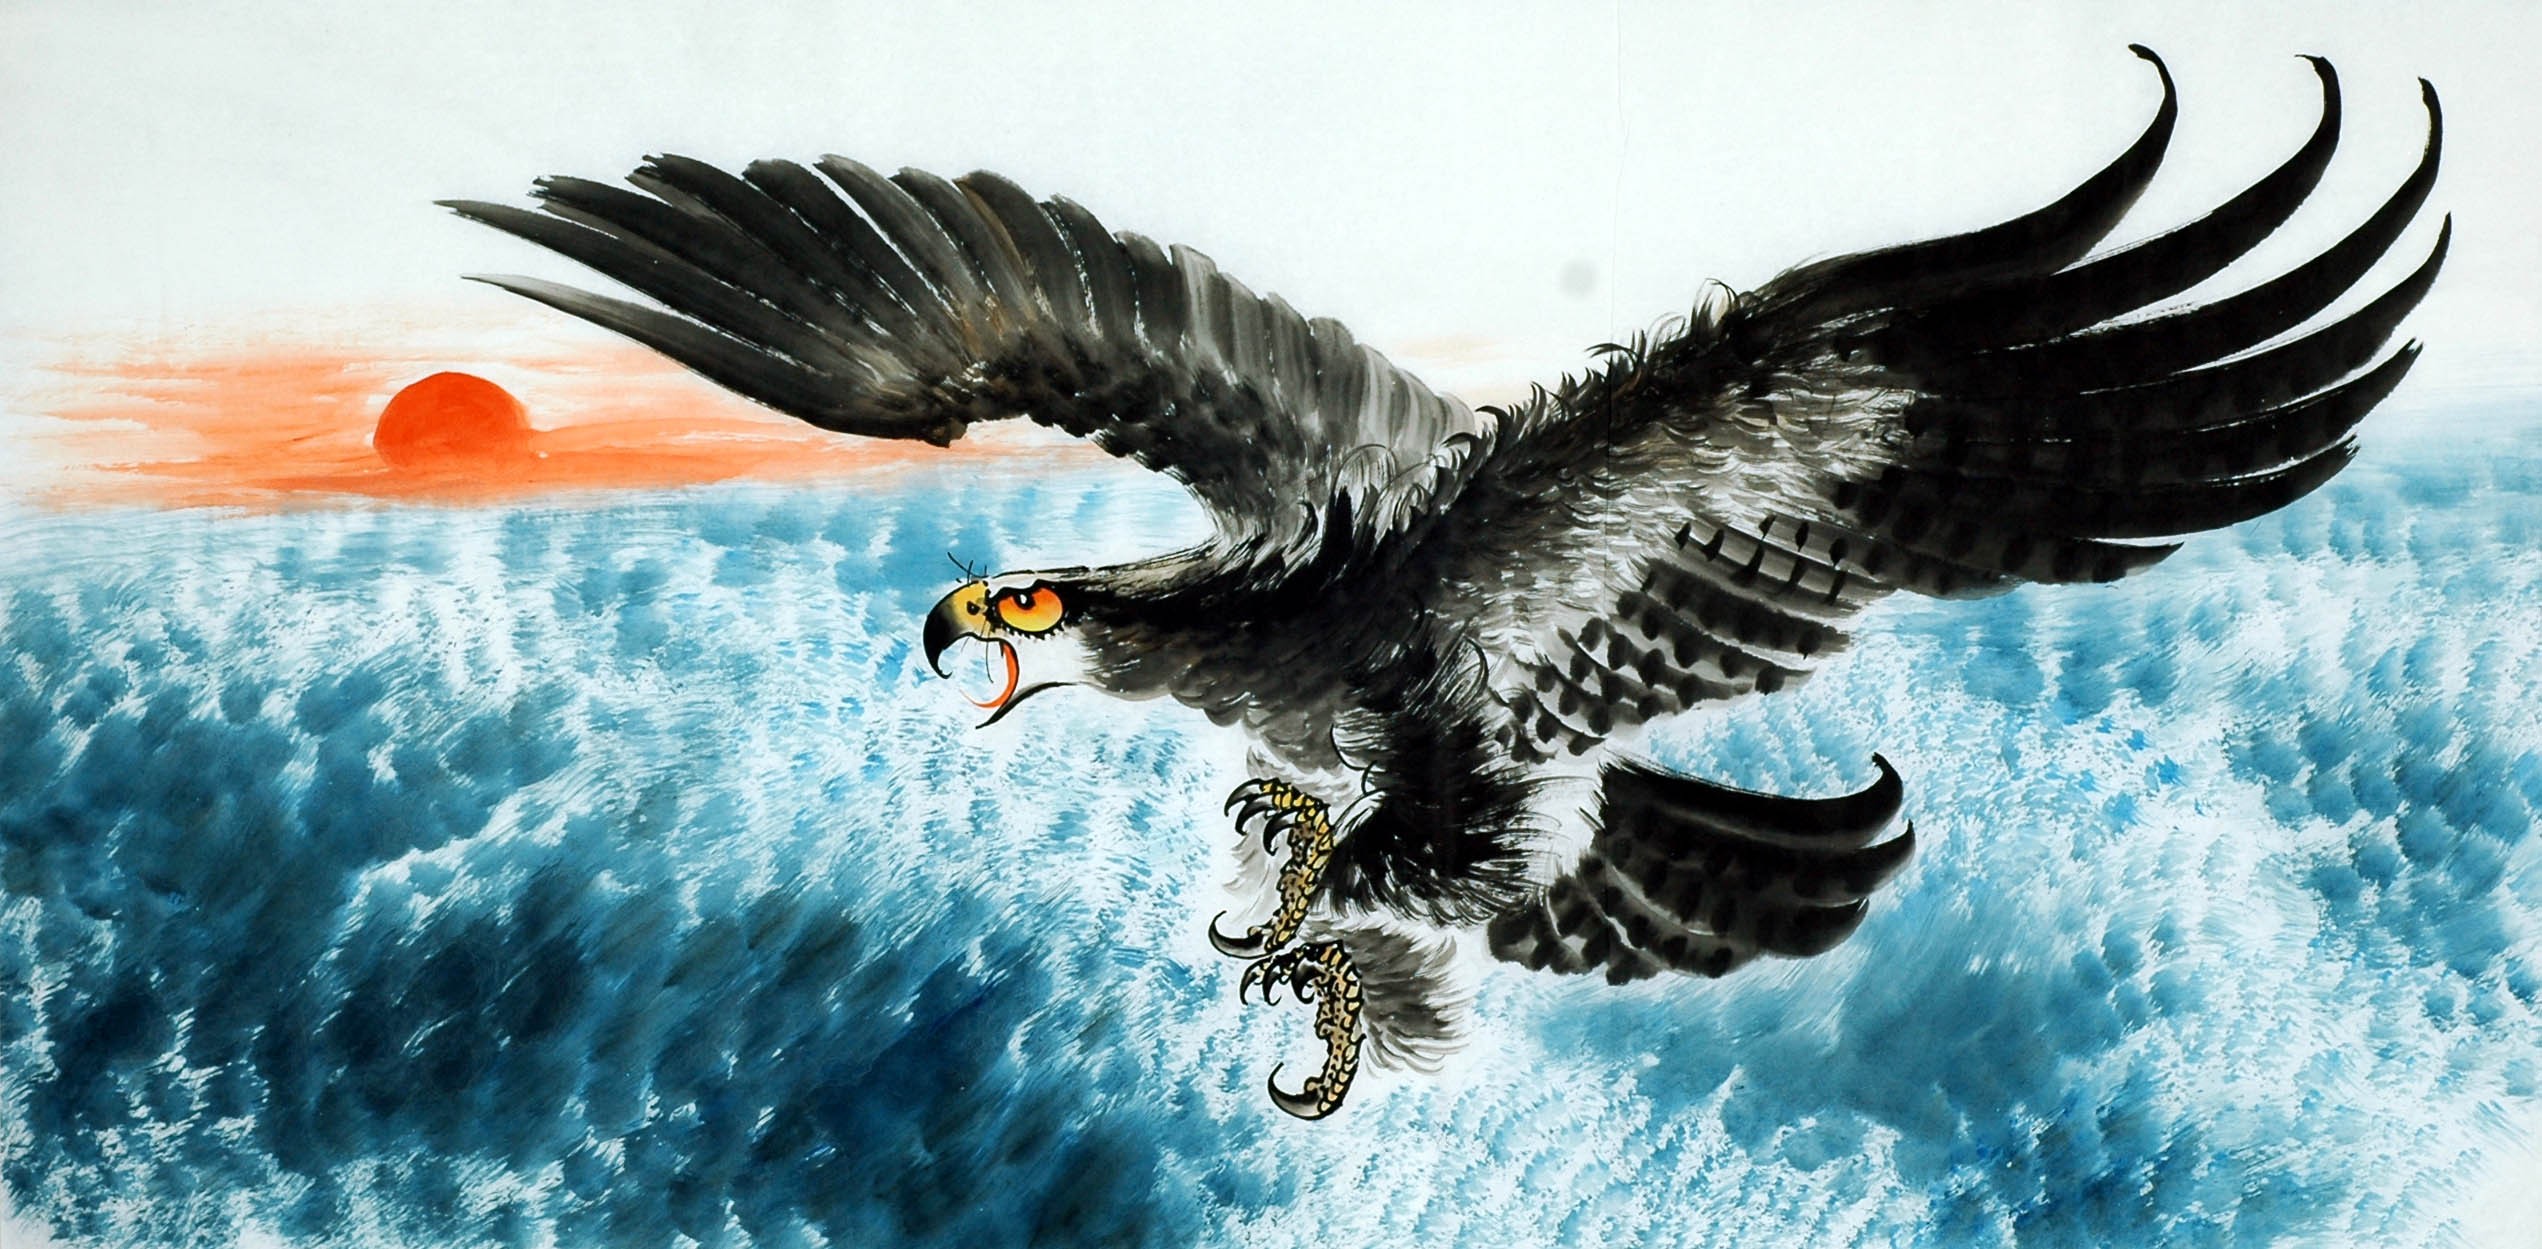 Chinese Eagle Painting - CNAG009732